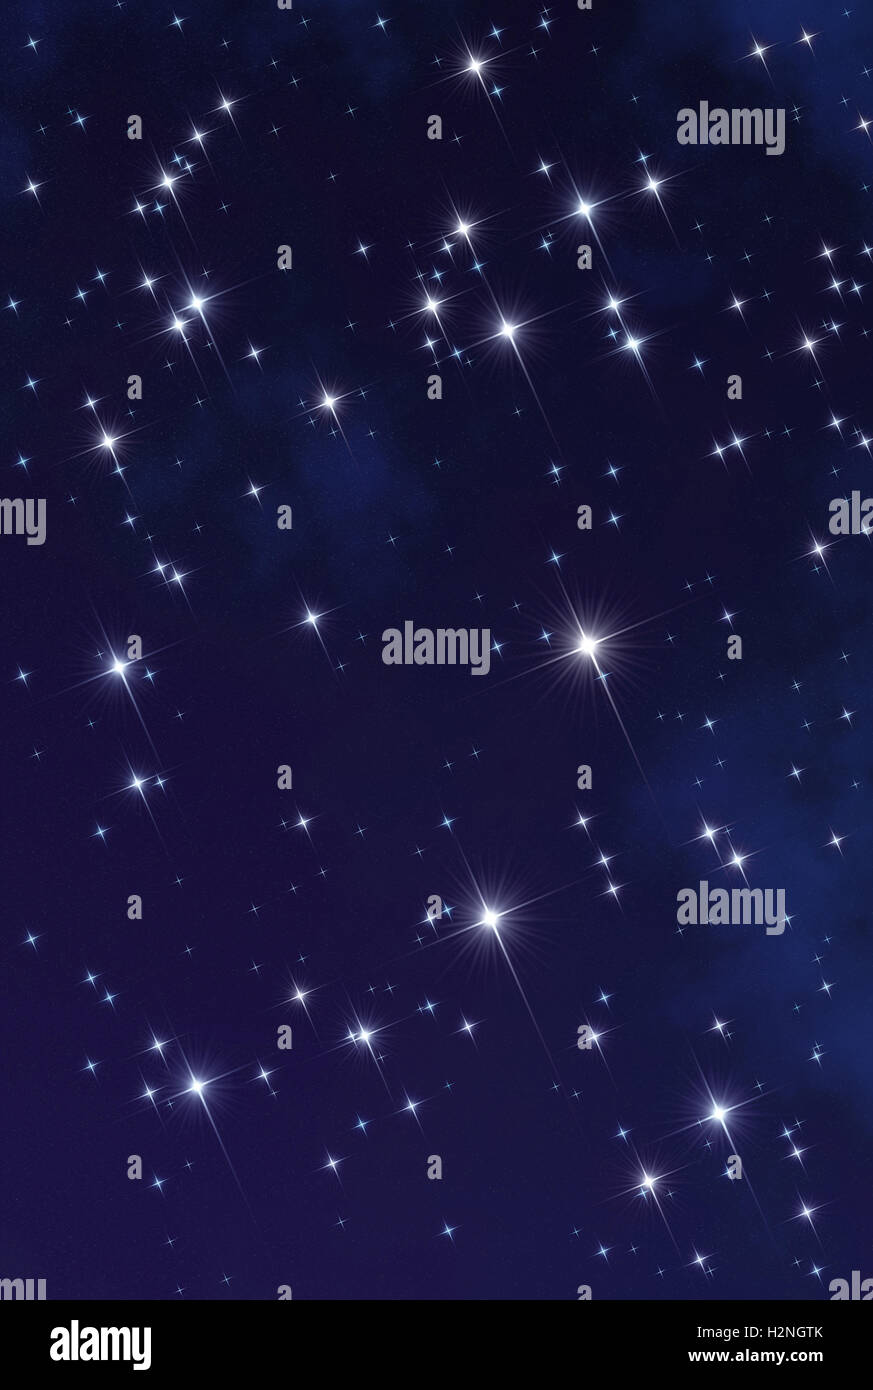 Abstract illustration représentant l'espace profond concept : lumières scintillantes étoiles scintillantes bleu foncé avec champ stellaire comme arrière-plan Banque D'Images